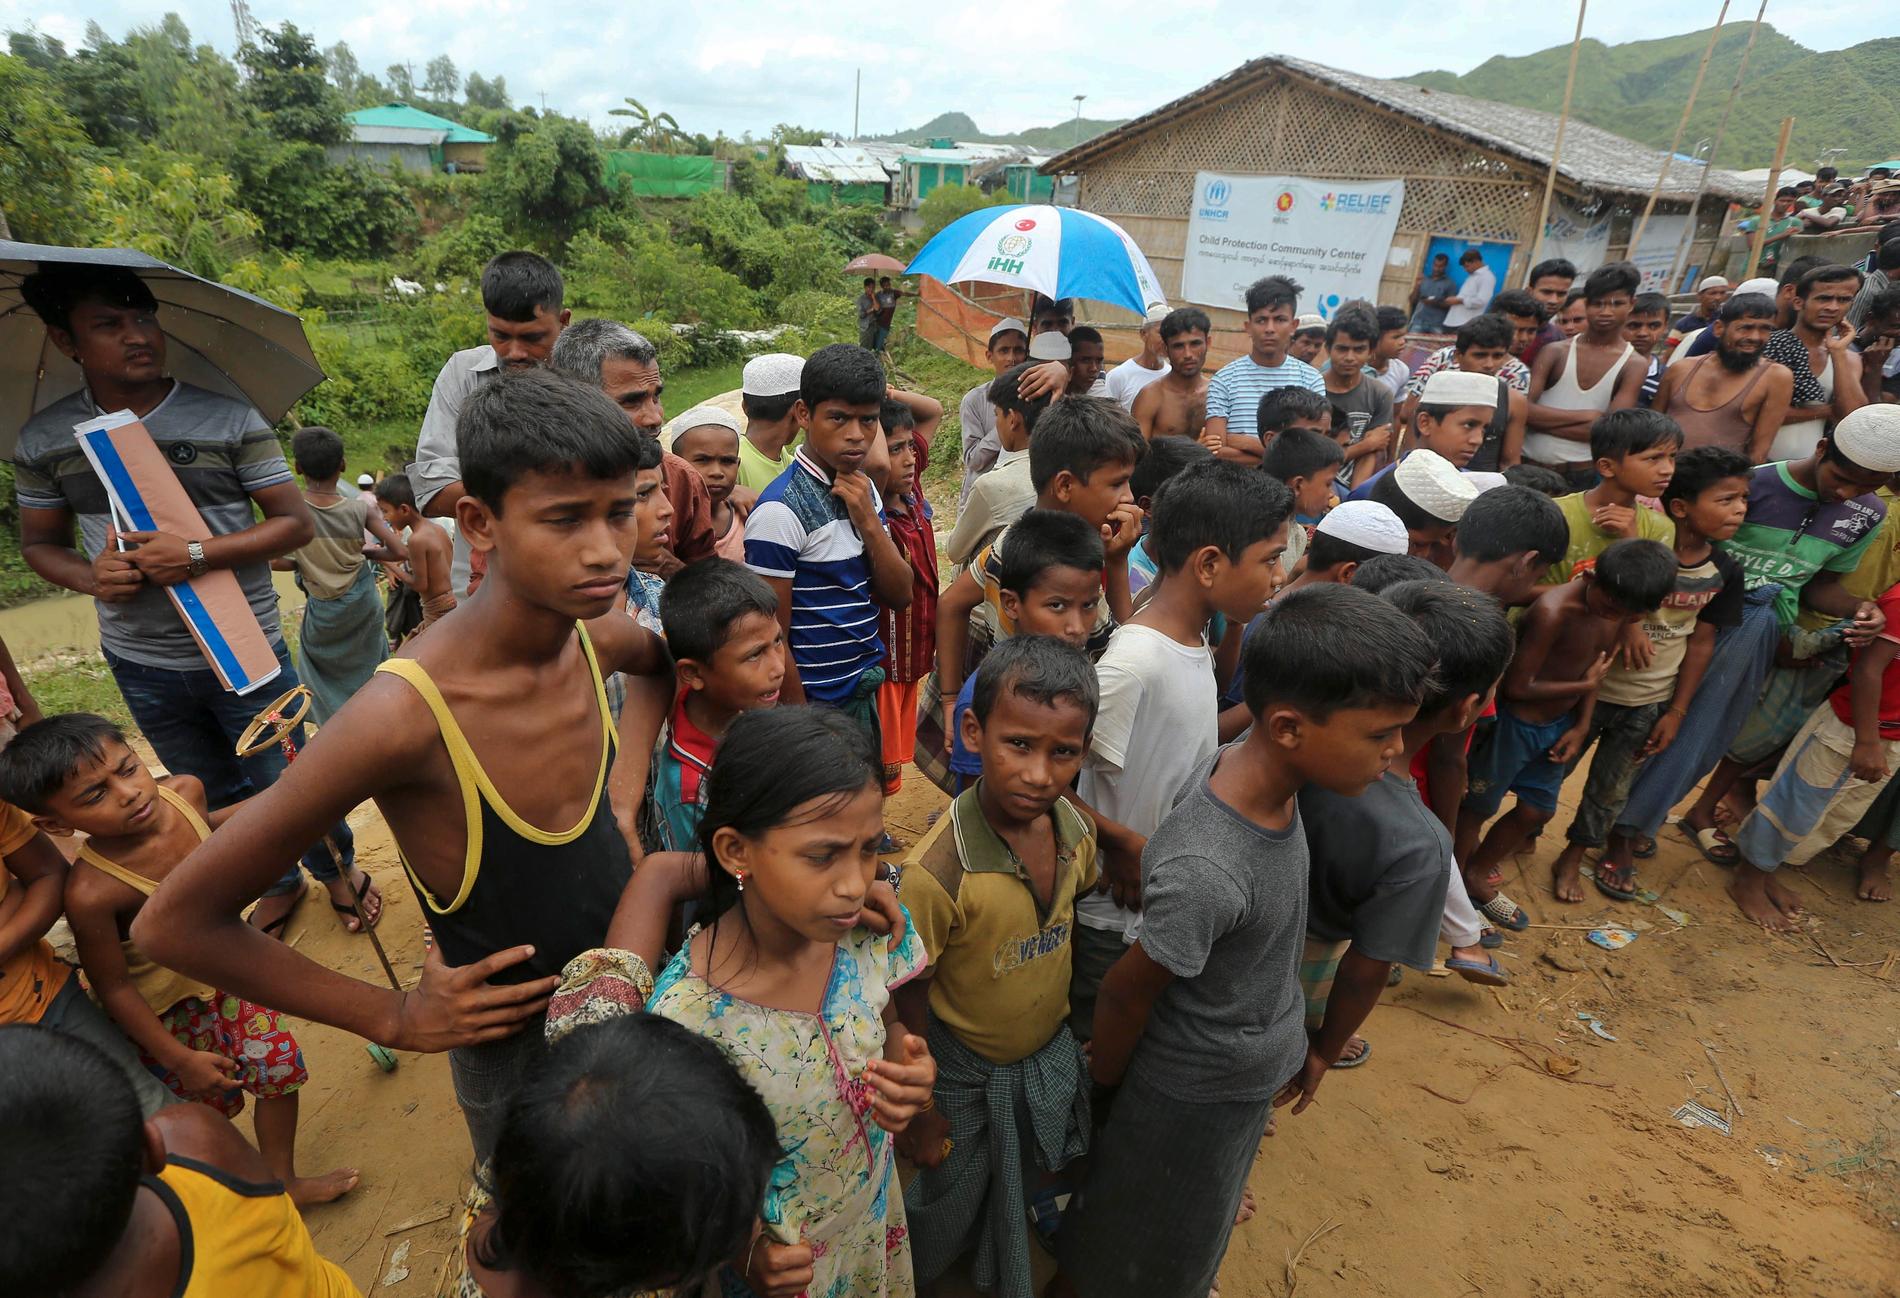 Rohingyabarn i flyktinglägret Cox's Bazar i Bangladesh, som beskrivs som det största flyktinglägret i världen. Arkivbild.